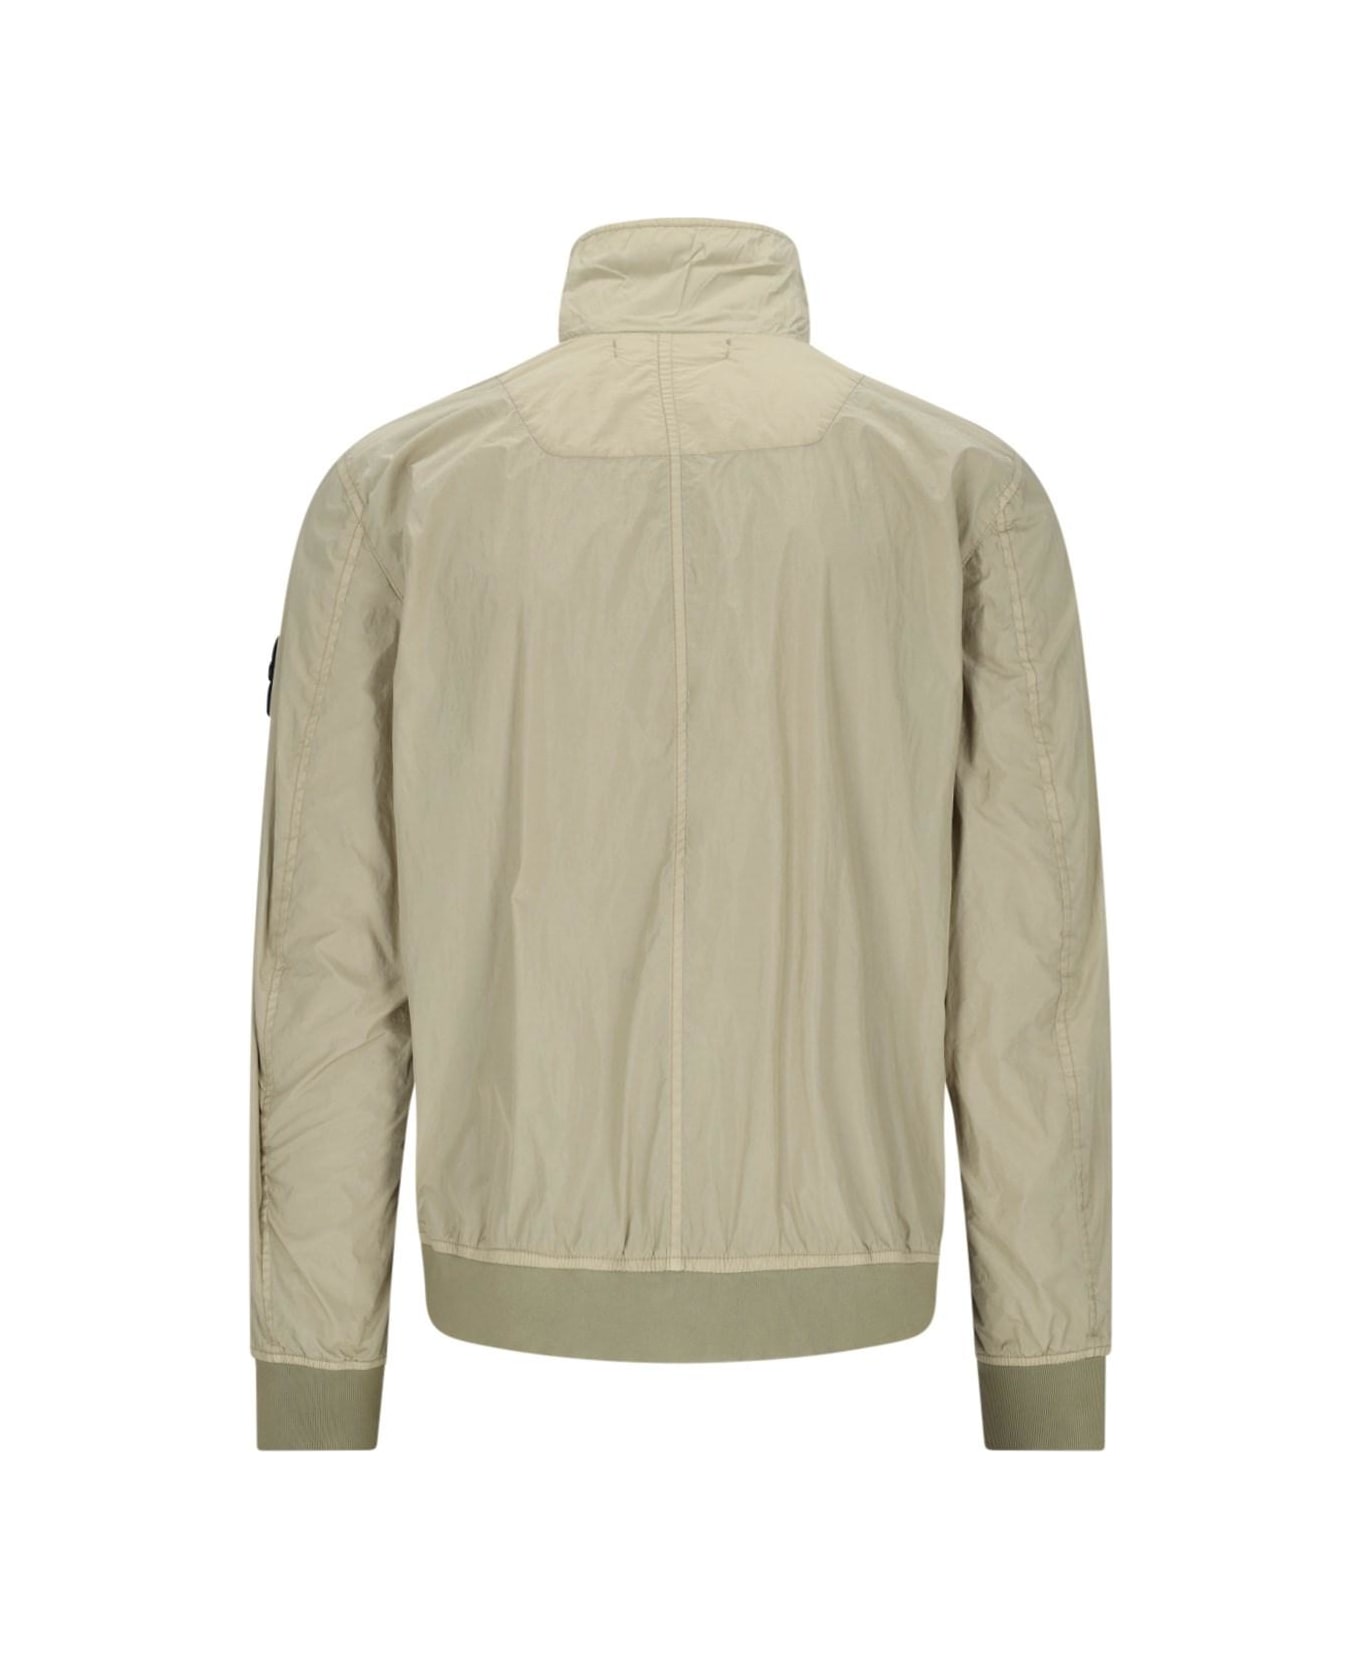 Stone Island Technical Fabric Jacket - Nero